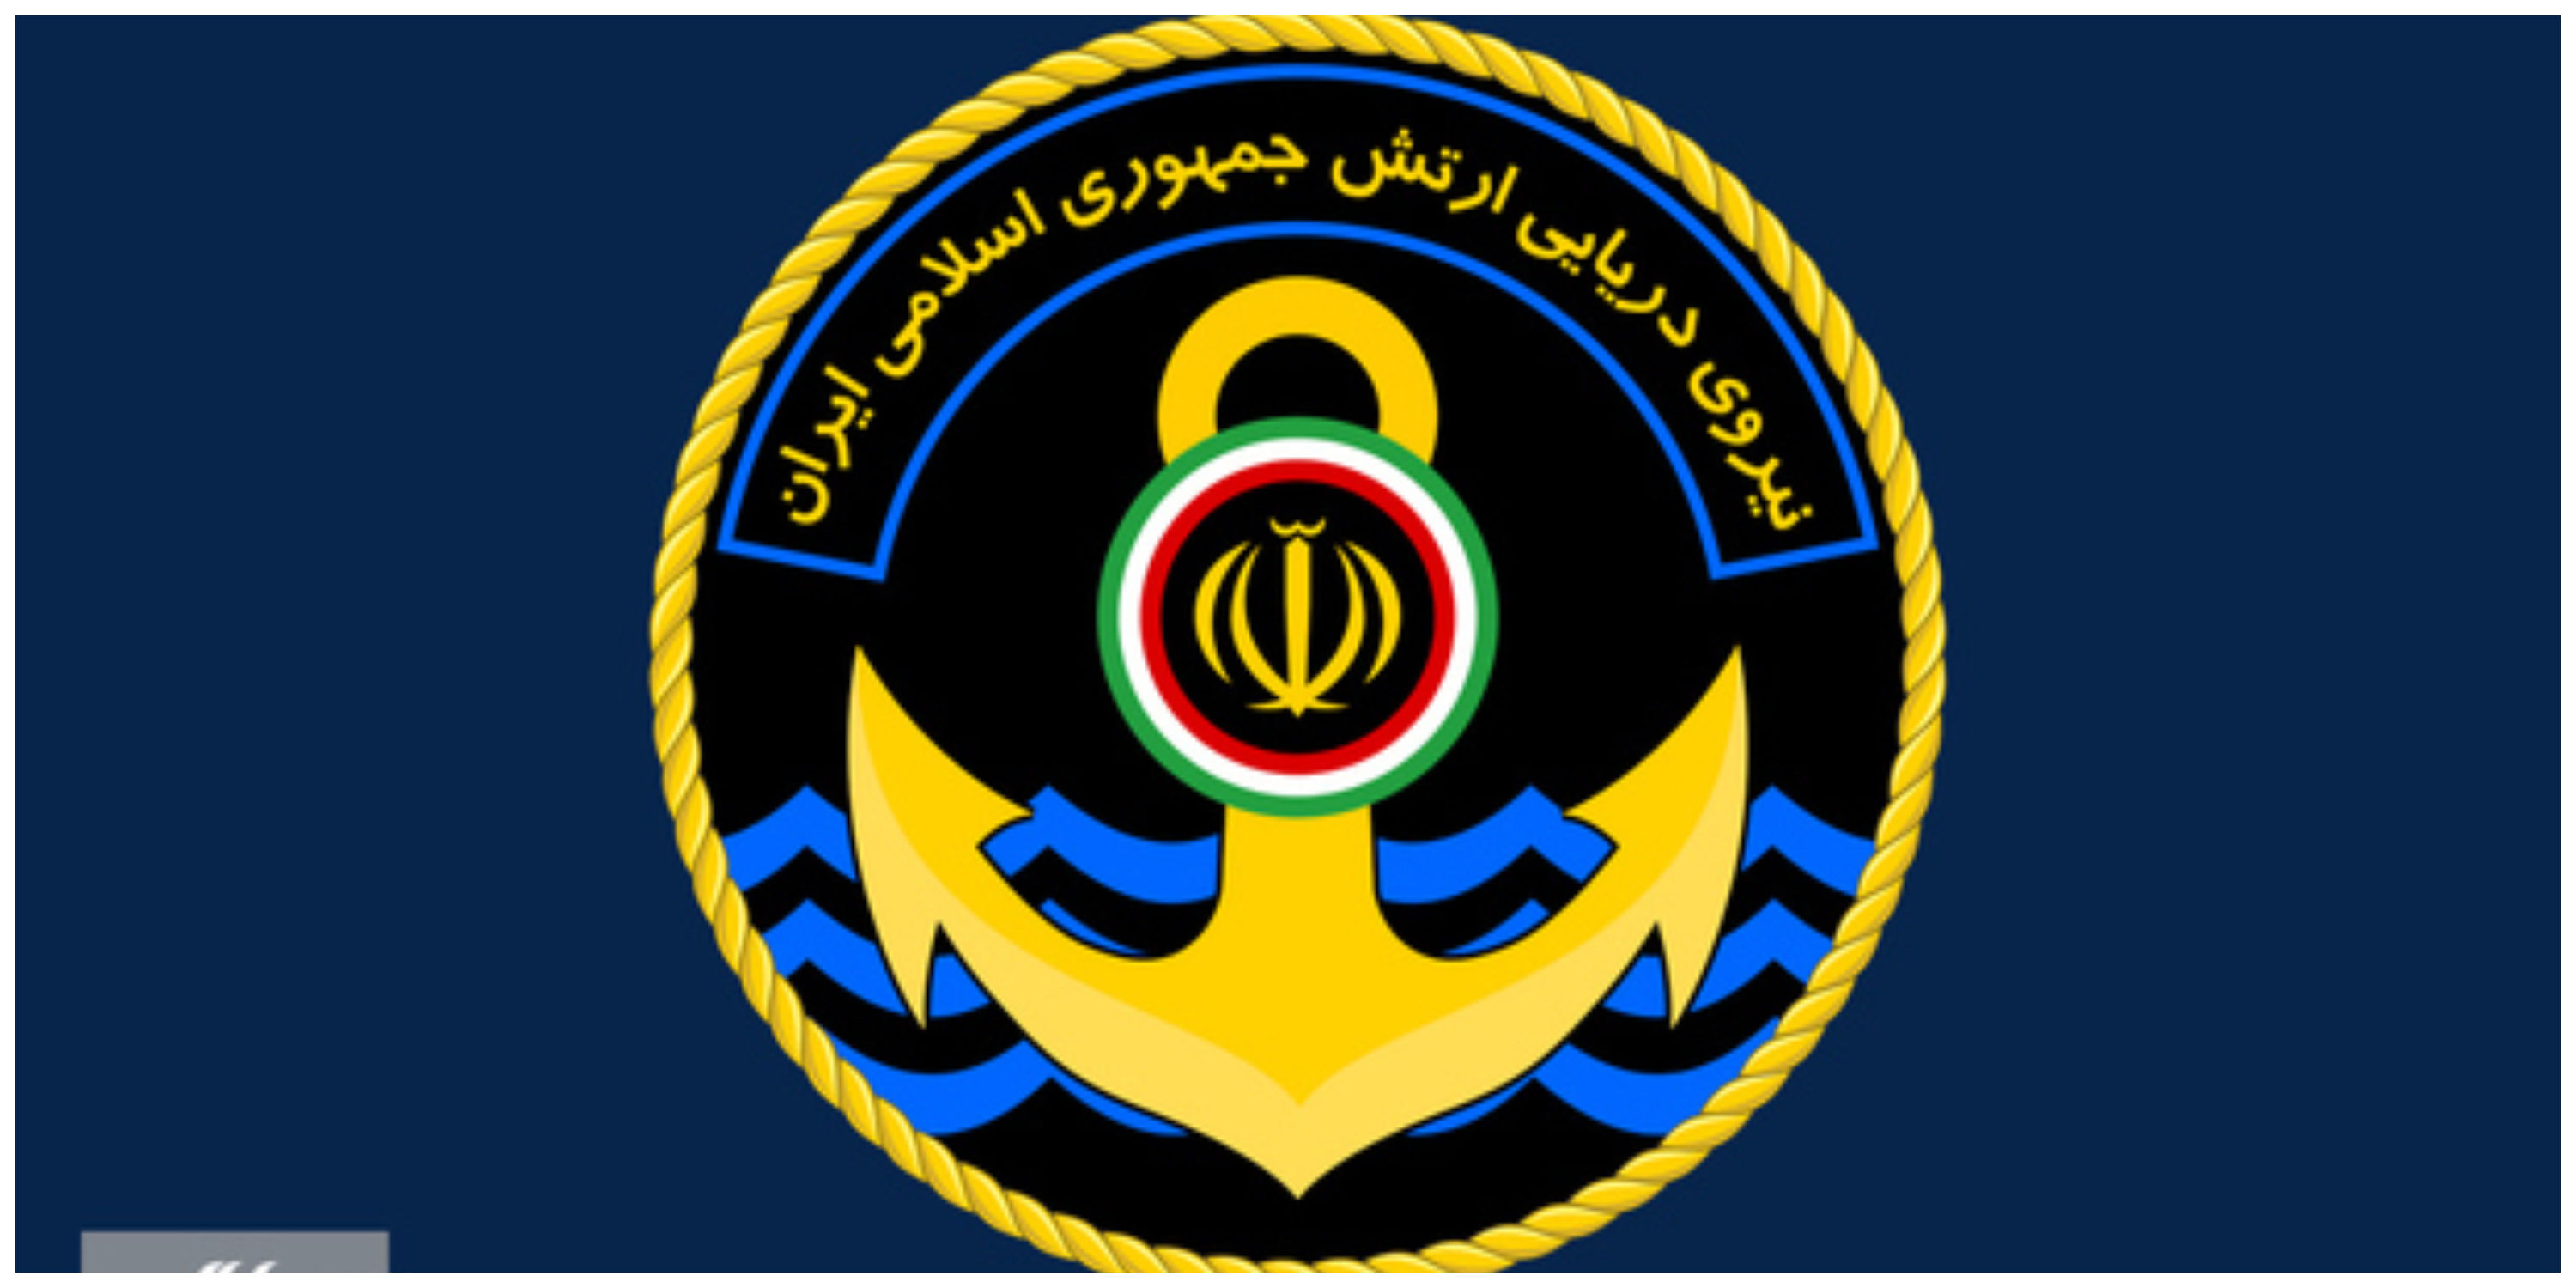  هشدار زیردریایی ارتش ایران به زیردریایی اتمی آمریکا در تنگه هرمز+ فیلم